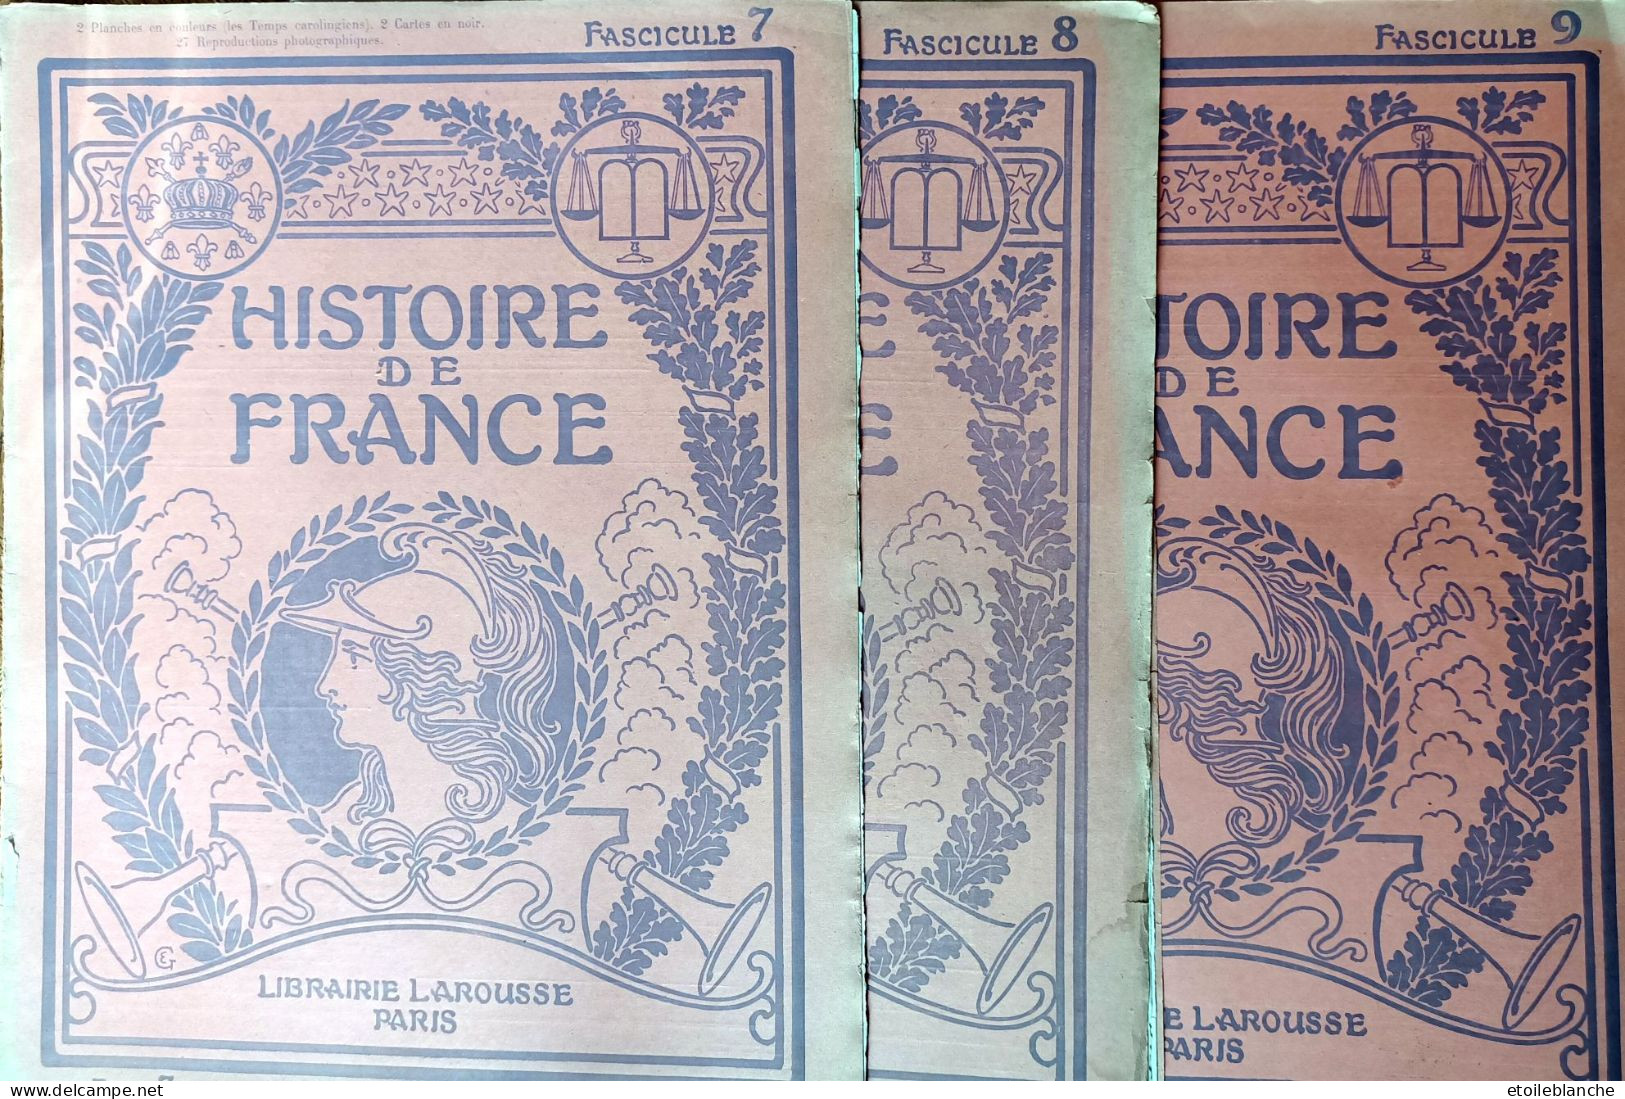 Histoire De France, Fascicules 7-8-9 - Capétiens Guillaume Le Conquerant, Bouvines, St Louis - Librairie Larousse Paris - Encyclopaedia